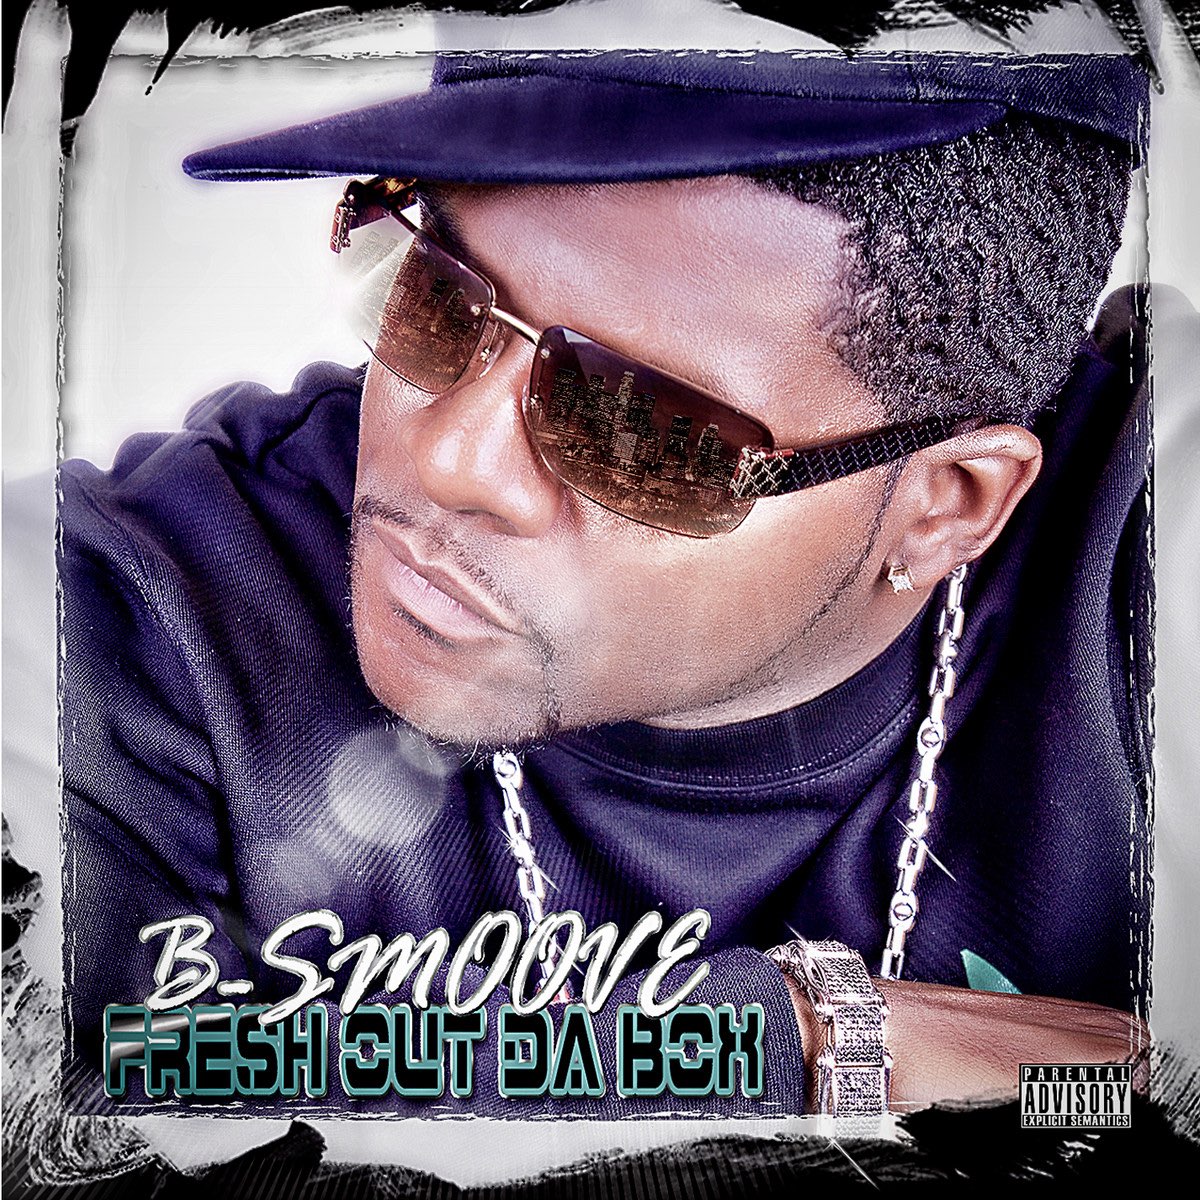 B-Smoove - Fresh Out Da Box